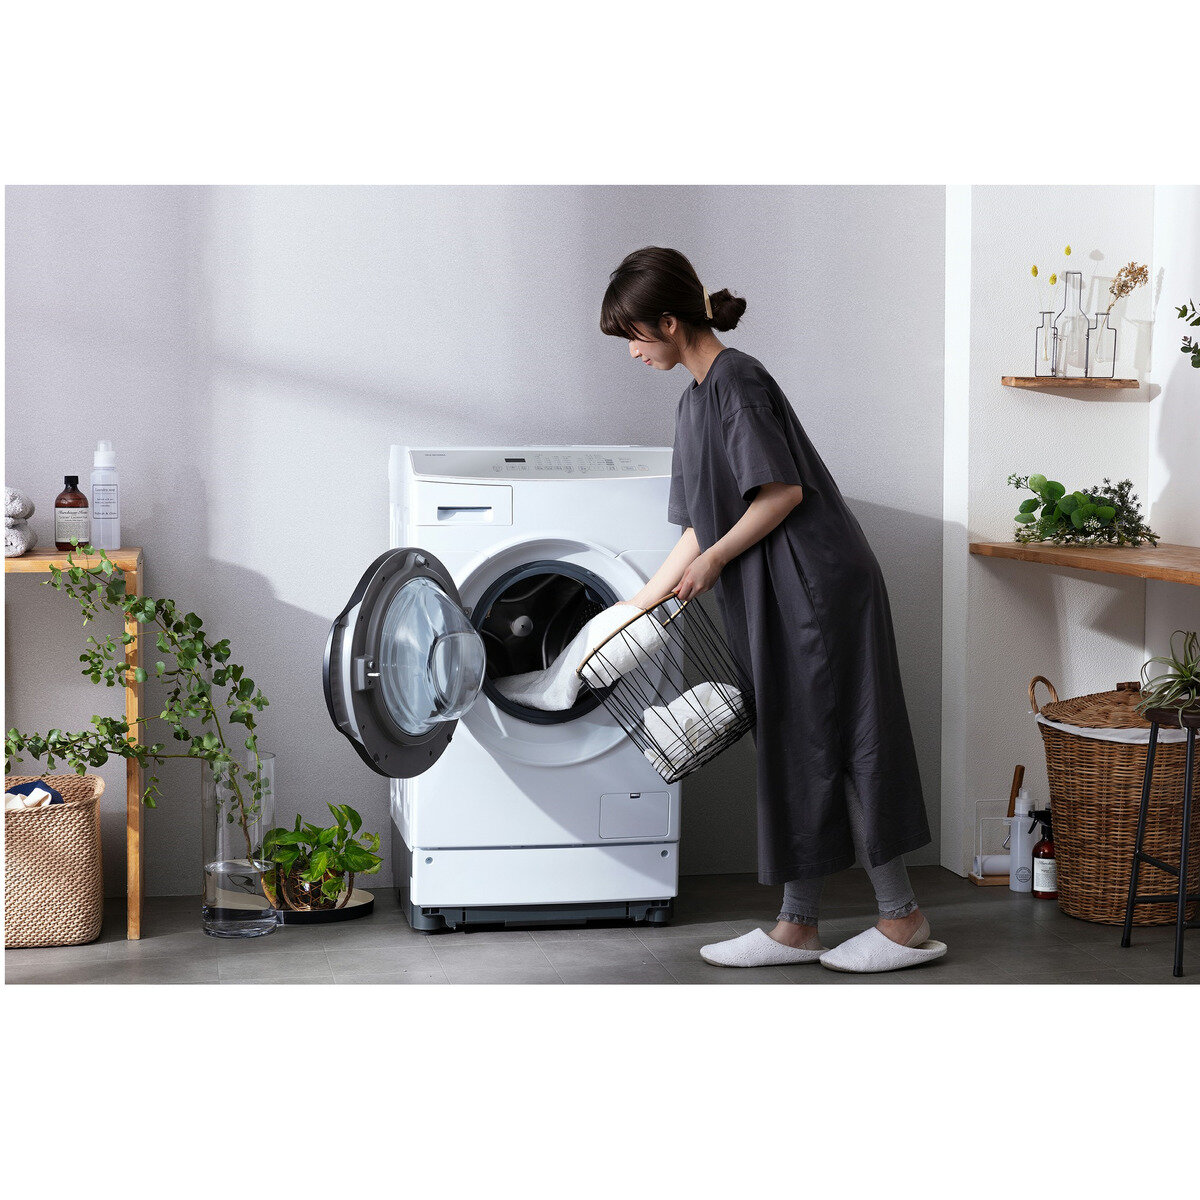 アイリスオーヤマ ドラム式洗濯機 乾燥機能付き 8kg FLK832-W | Costco 